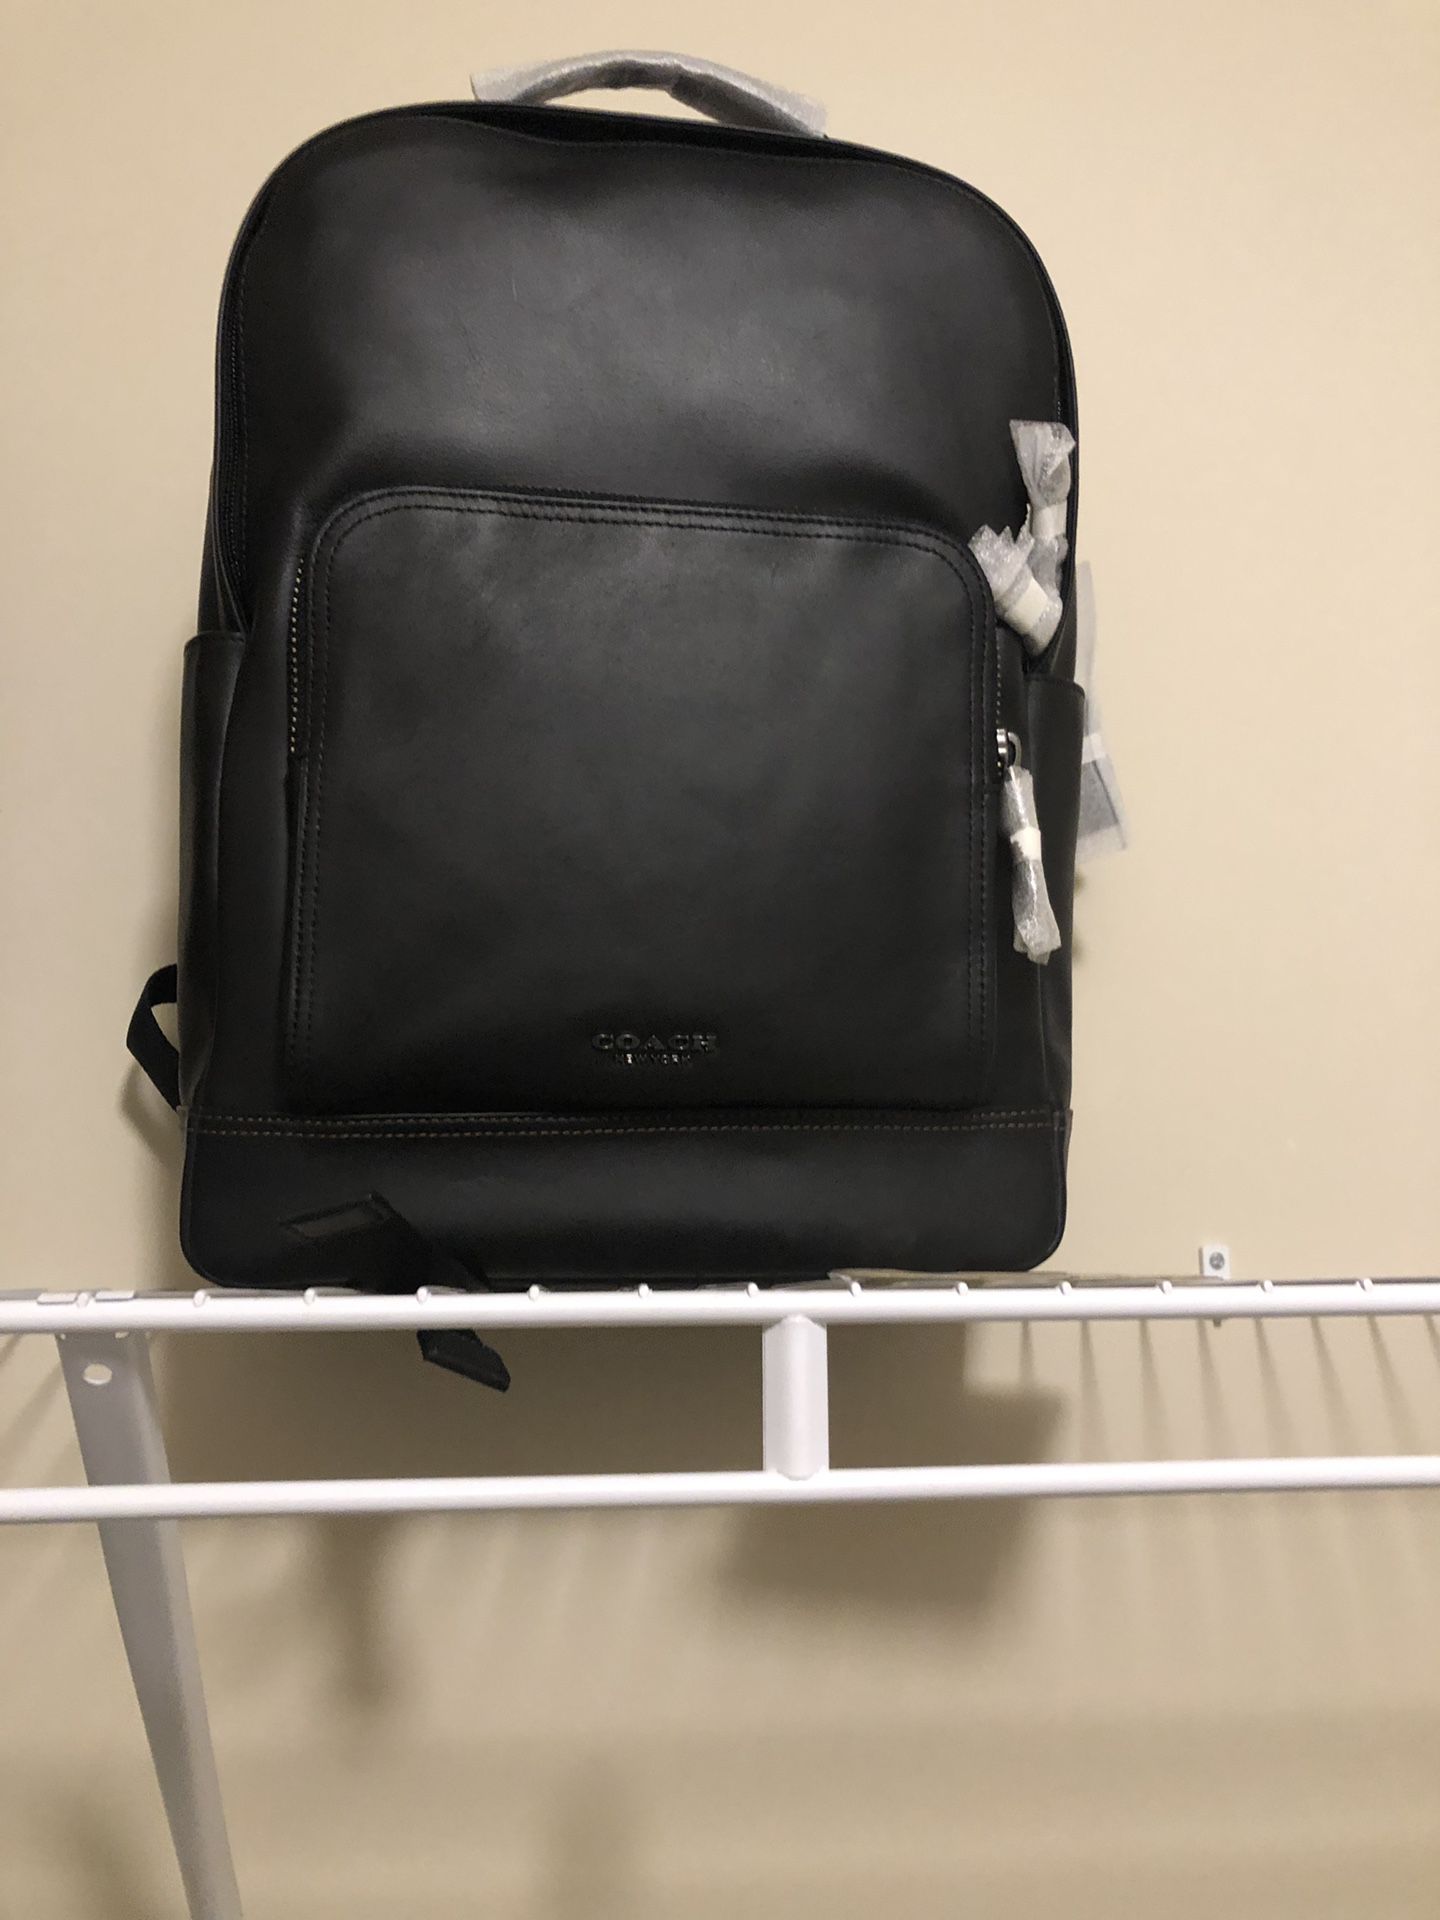 Black coach backpack